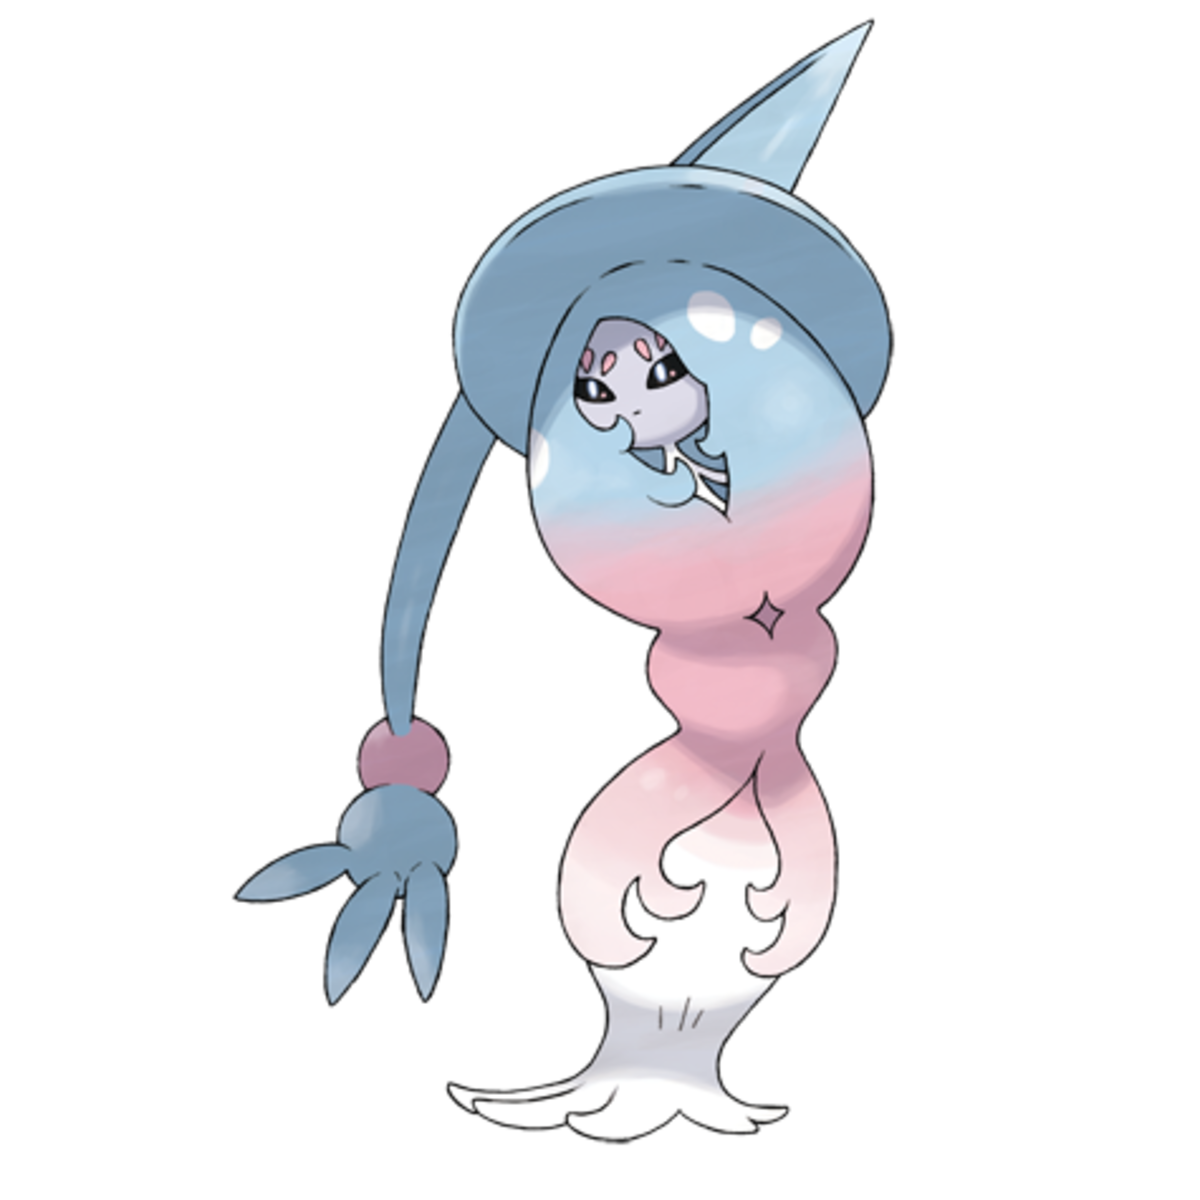 Hatterene, the "Silent" Pokémon